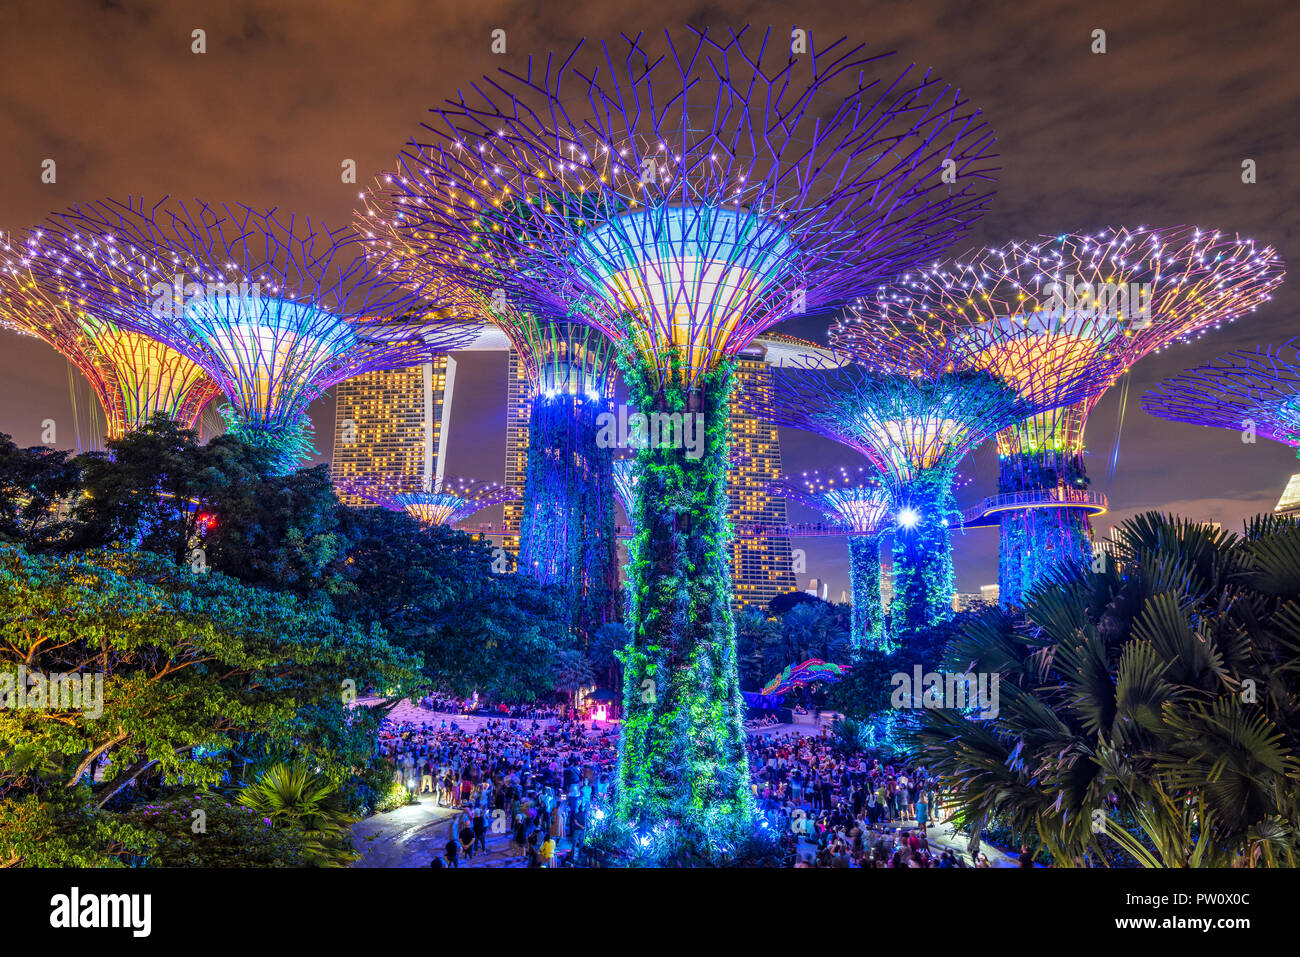 El show de luces Supertree Grove en jardines por el parque natural de la Bahía de Singapur Foto de stock